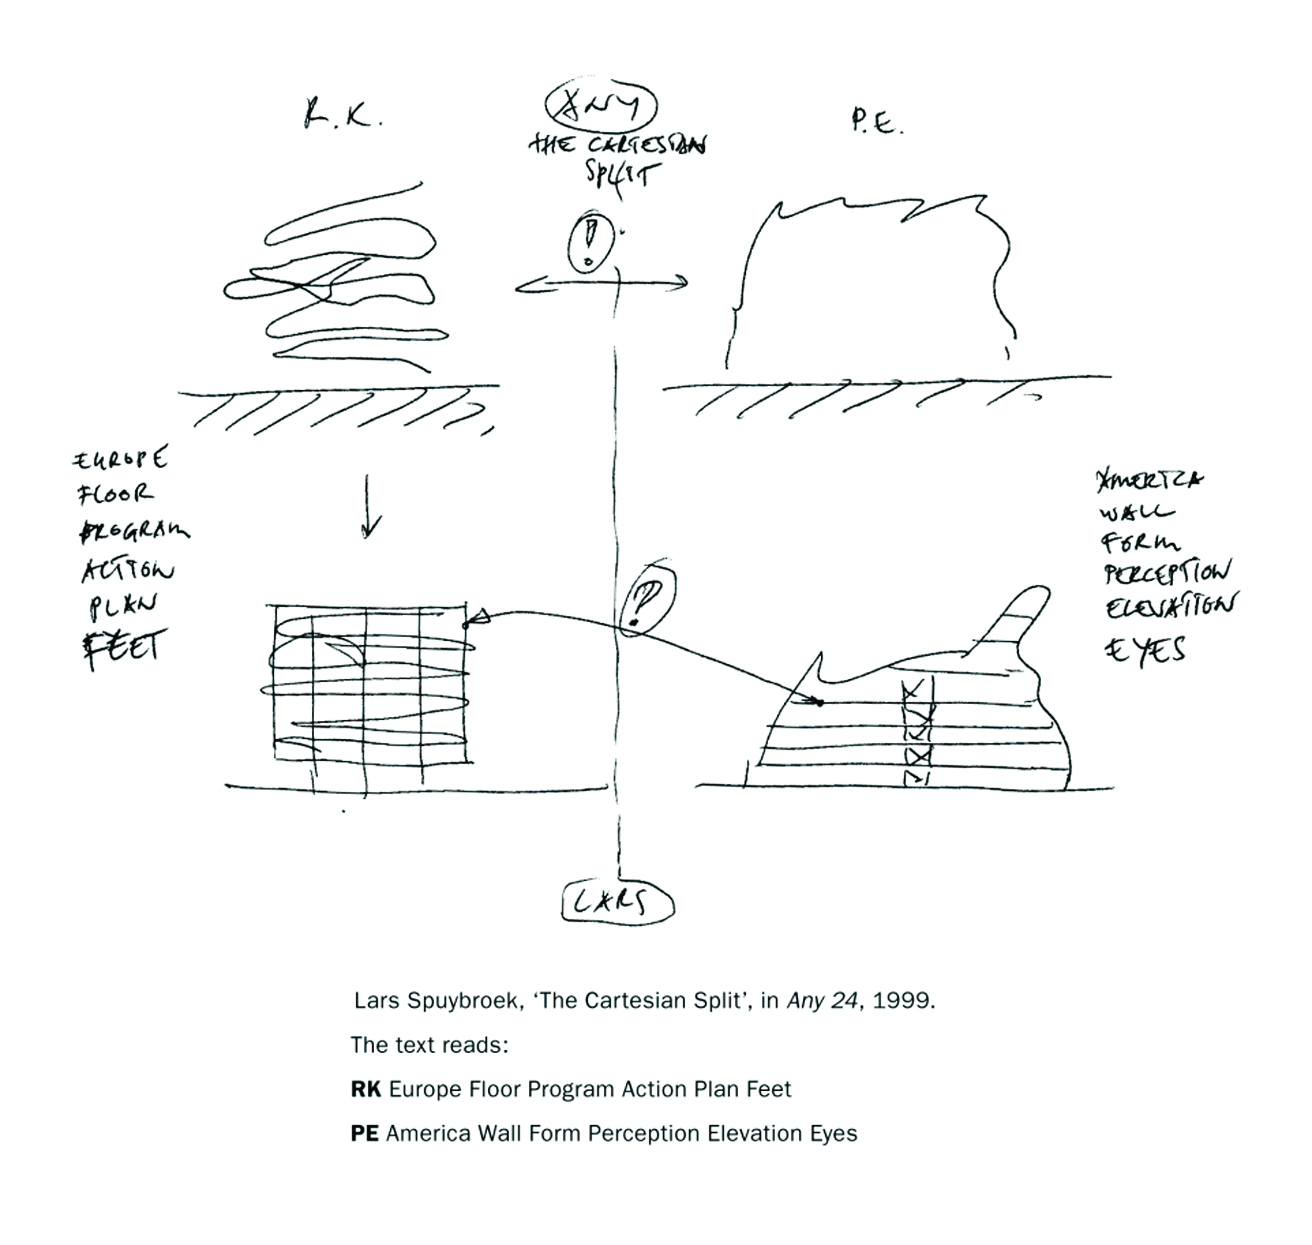 اسکیس «لارس اسپای بروک» در نشریه ANY که نمایشی از تفاوت‌های دو نوع معماری آمریکایی و اروپایی است. RK مخفف رم‌کولهاس اروپایی و PE مخفف پیتر آیزنمن آمریکایی است.